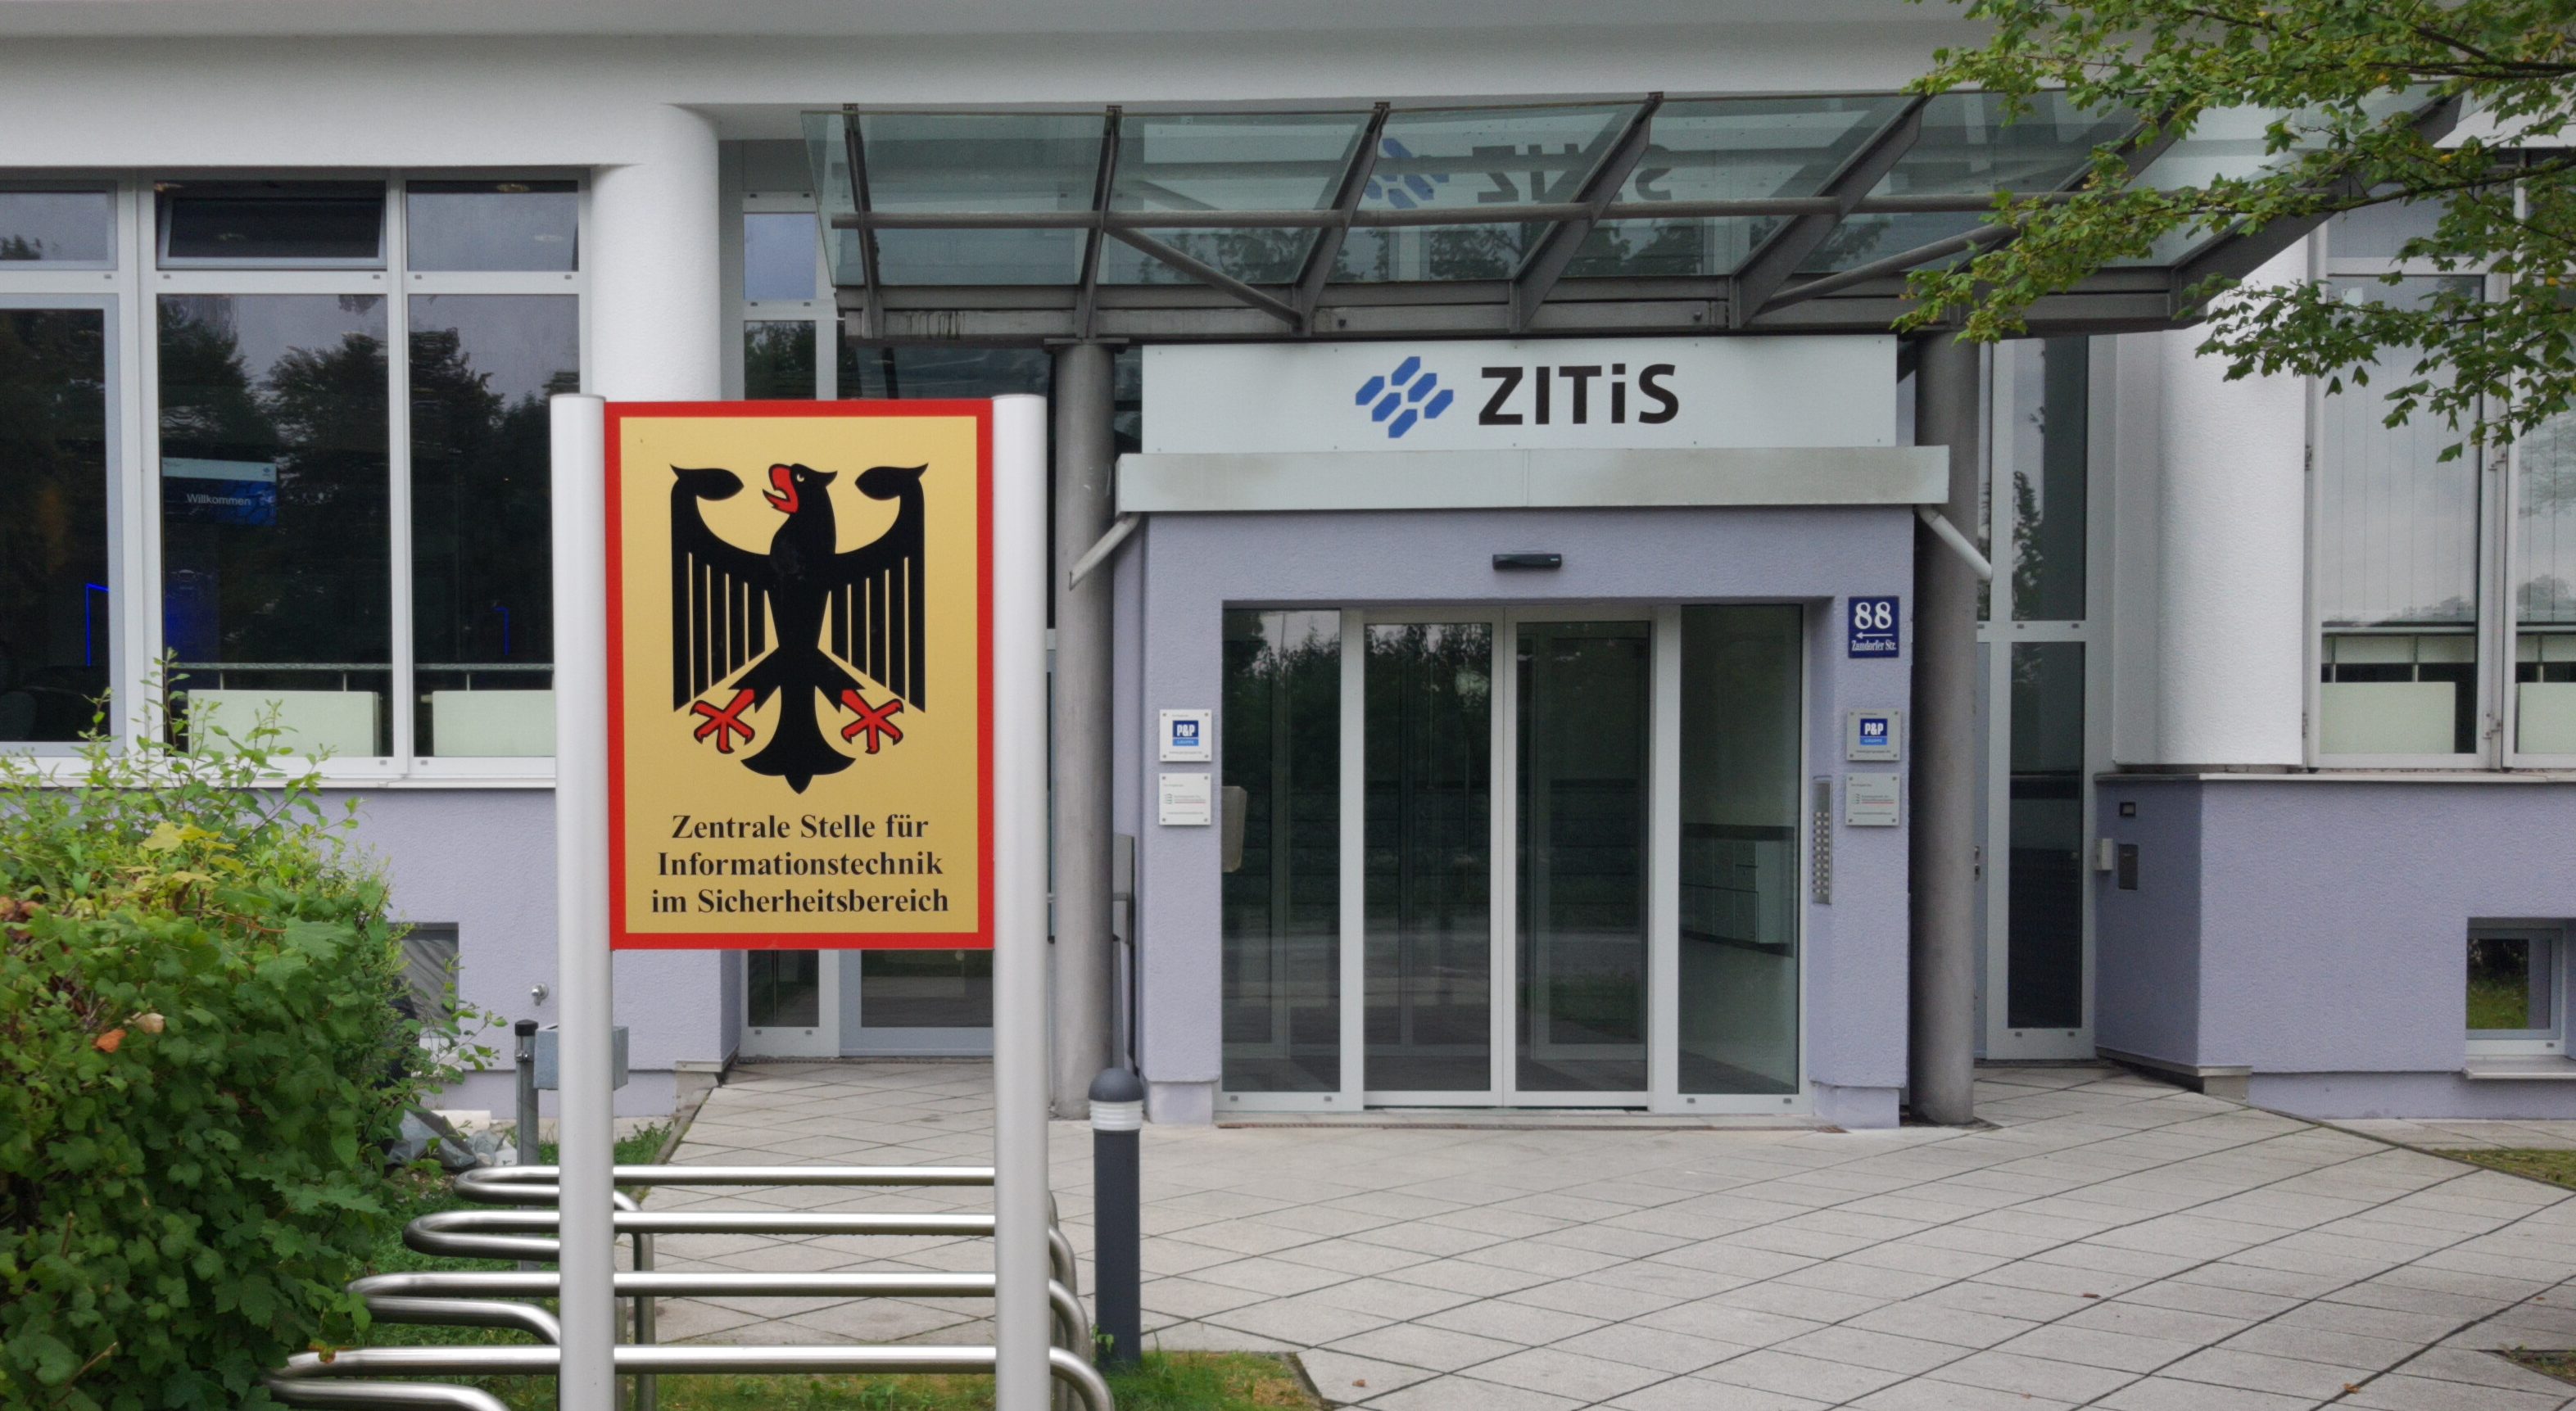 Sitz der ZITiS in München. – CC-BY 4.0 Andre Meiste